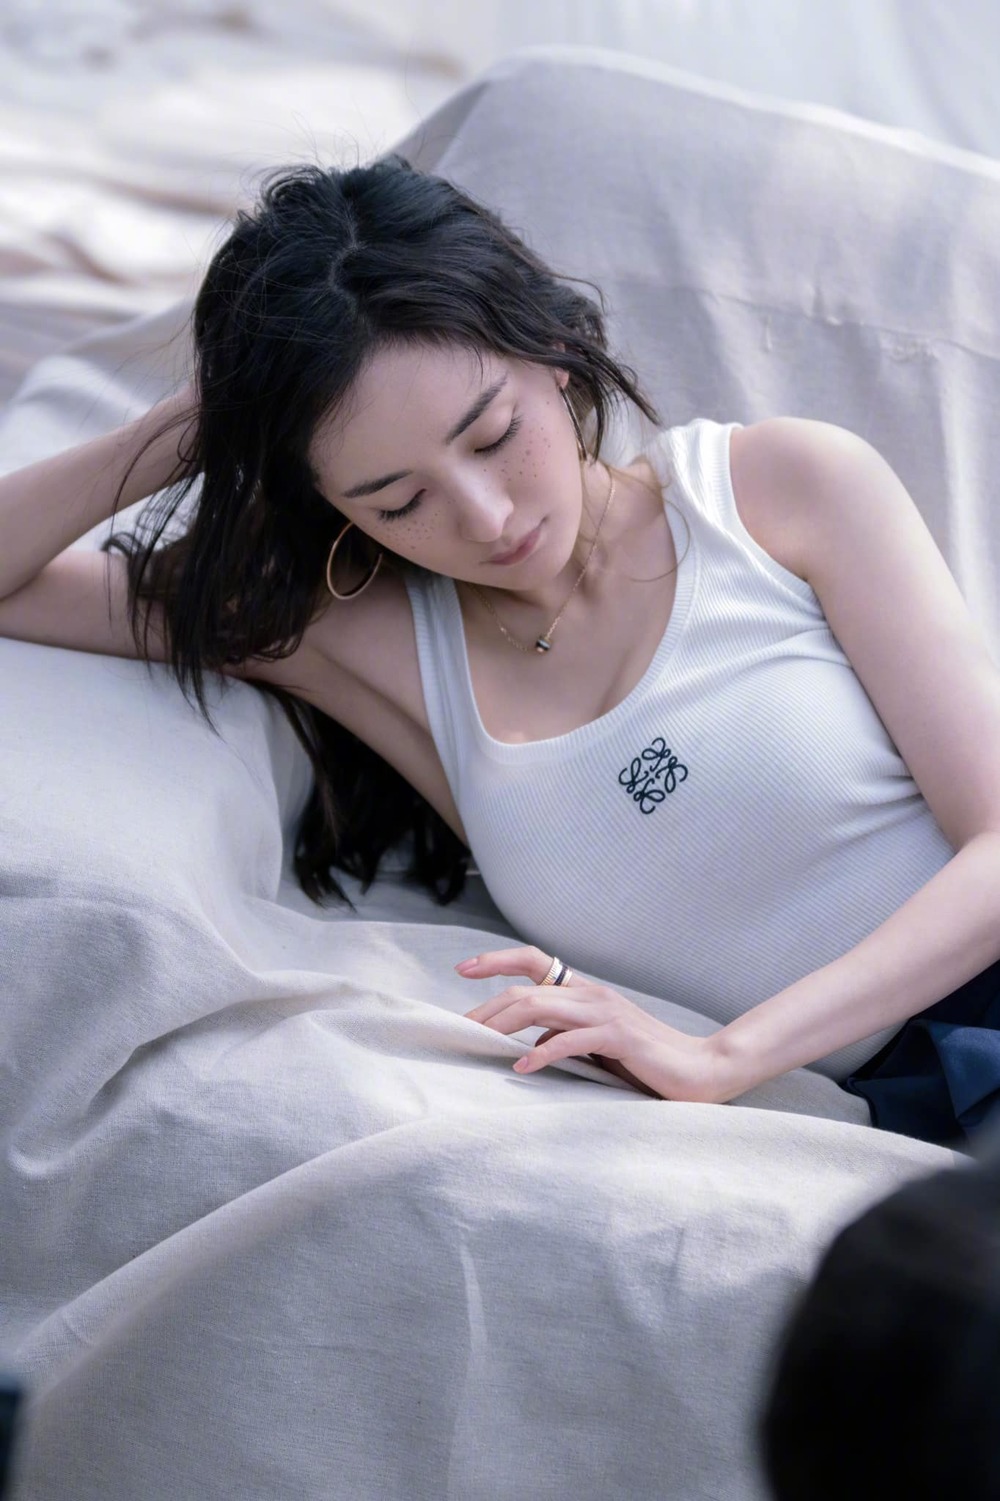  
Nữ diễn viên tạm thời không tham gia đóng phim để nghỉ ngơi. (Ảnh: Weibo)